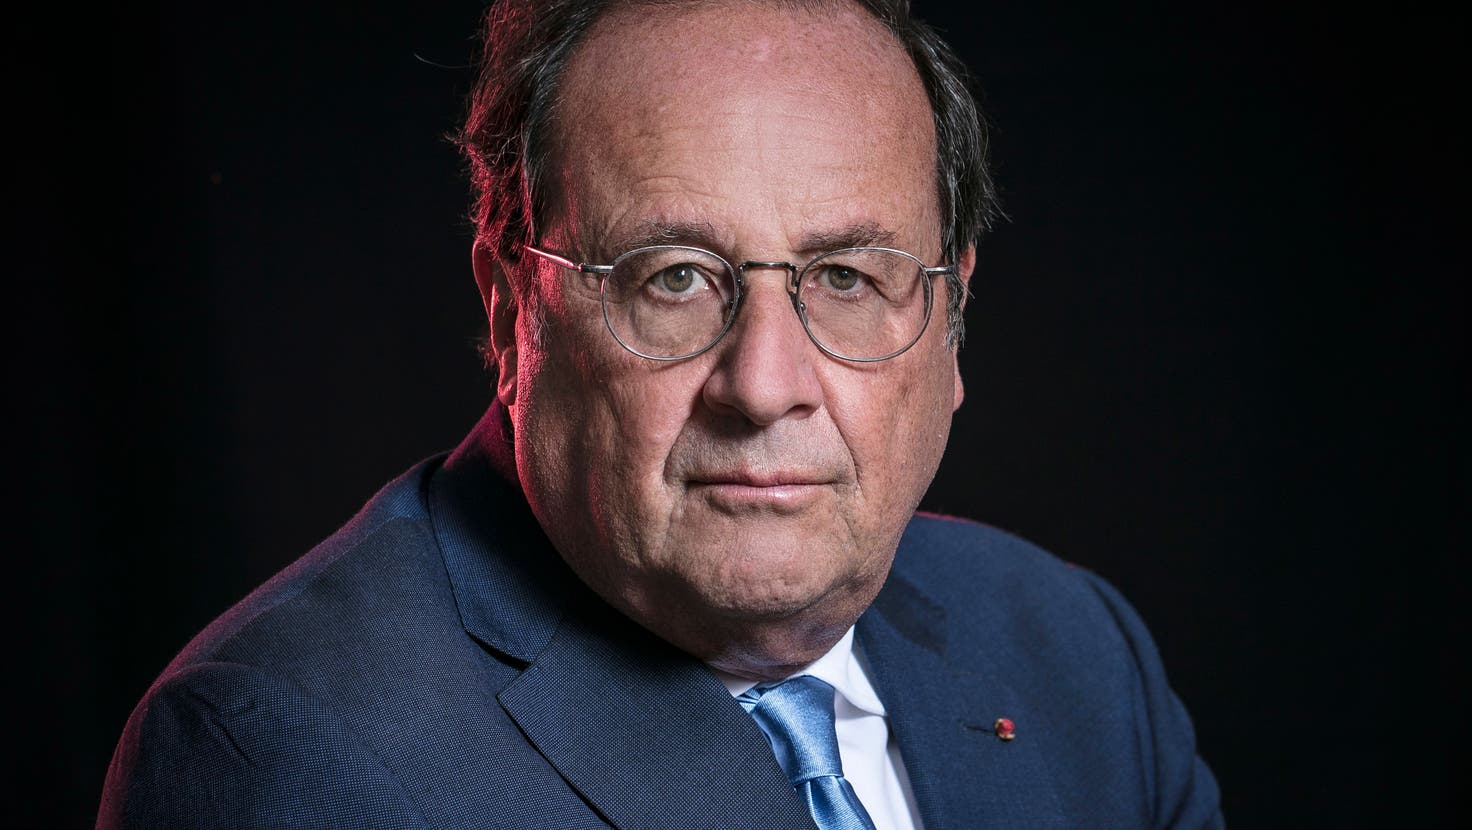 François Hollande war von 2012 bis 2017 Präsident Frankreichs. (Arnaud Meyer / Leextra / laif)